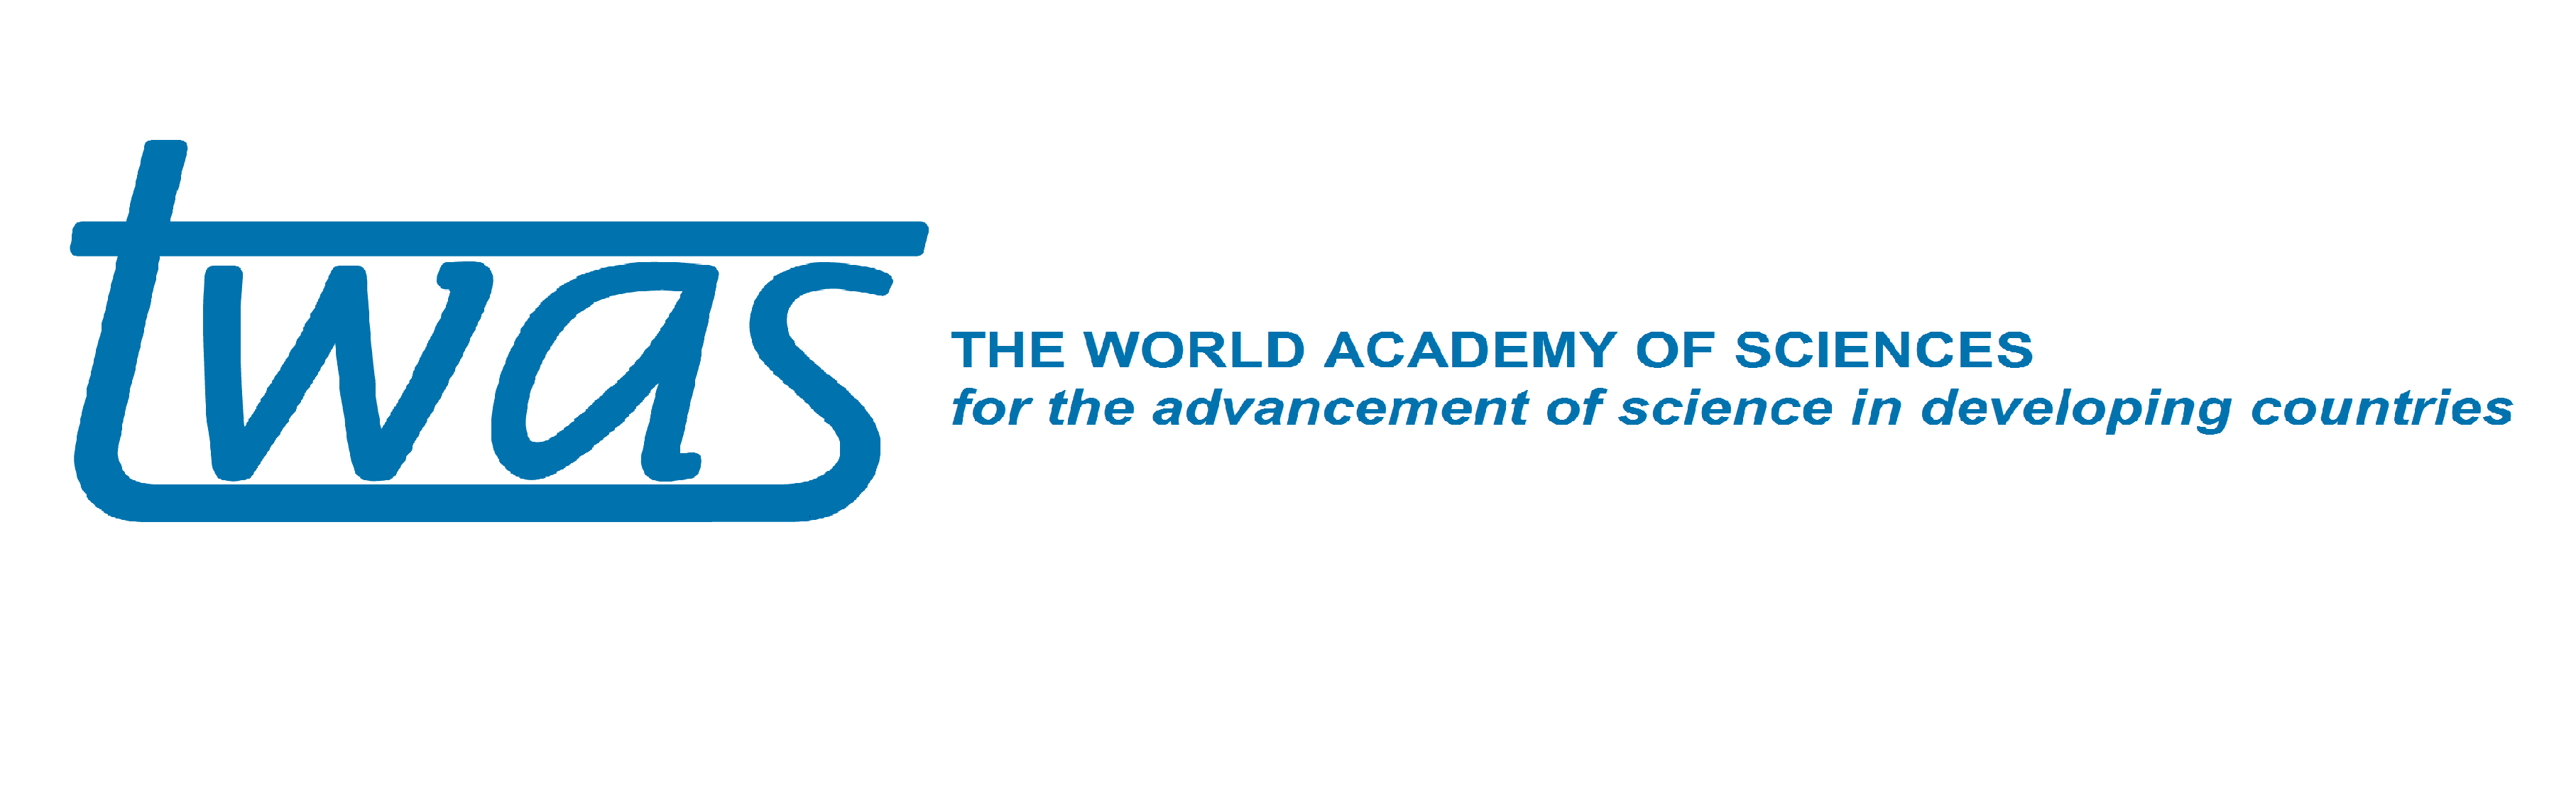 دورة تدريبية حول دبلوماسية العلوم 30 أغسطس وحتى 3 سبتمبر 2021(عن بعد)